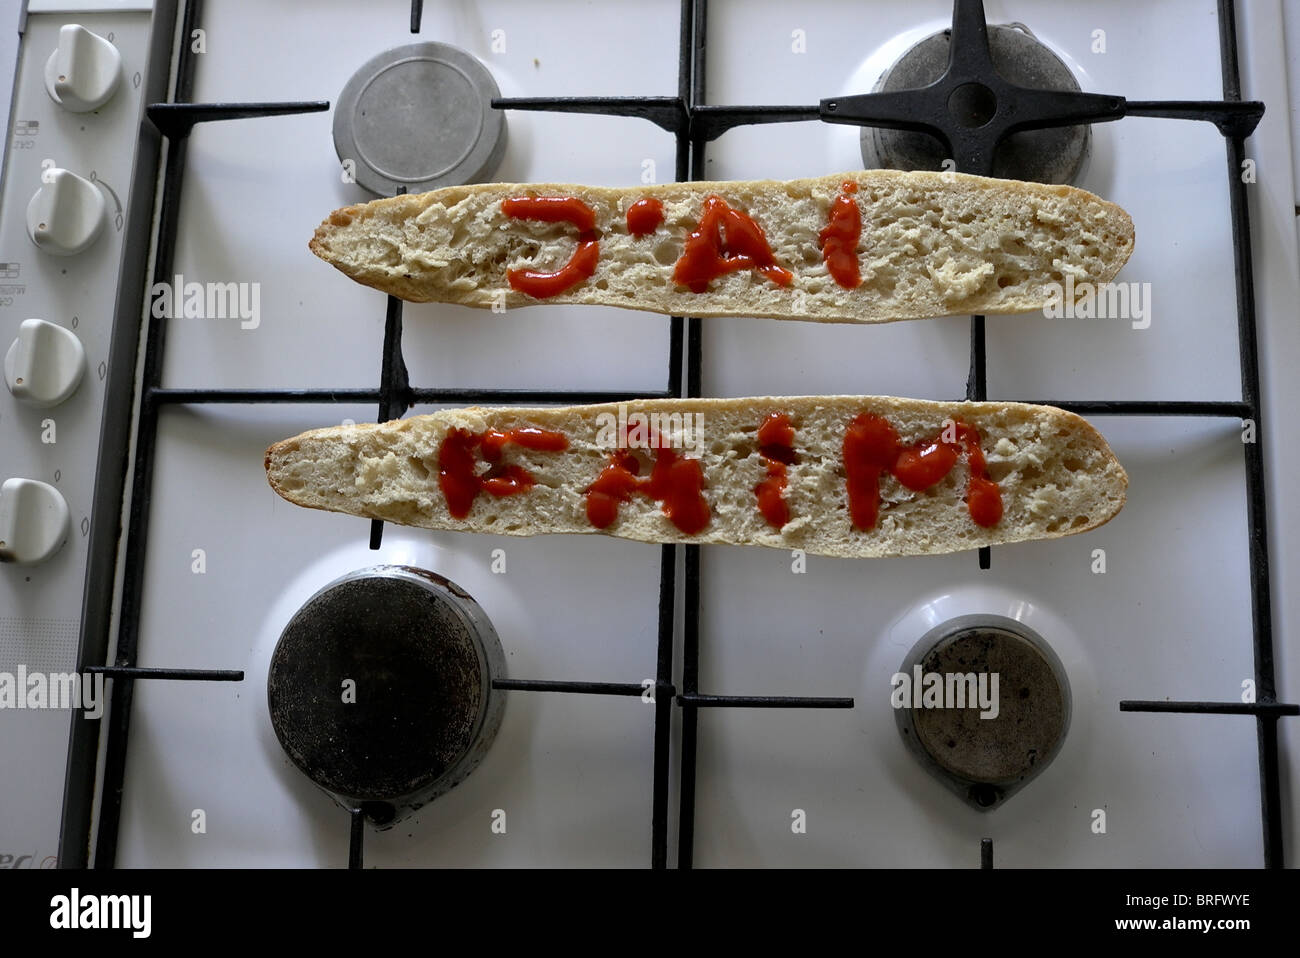 Le parole "j'ai faim ' scritto su una baguette fotografato in una cucina Foto Stock